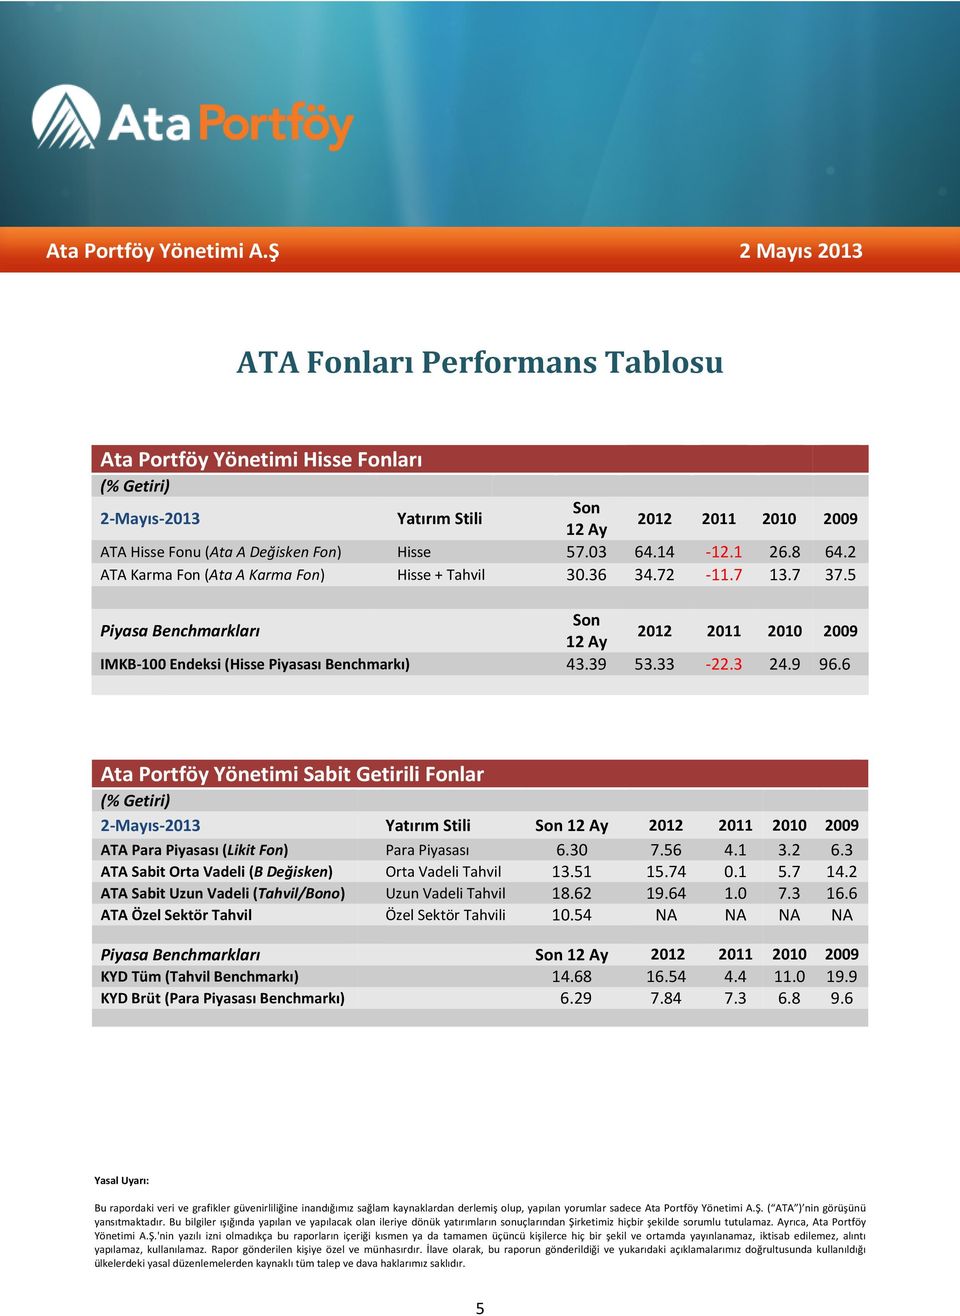 9 96.6 Ata Portföy Yönetimi Sabit Getirili Fonlar (% Getiri) 2-Mayıs-2013 Yatırım Stili Son 12 Ay 2012 2011 2010 2009 ATA Para Piyasası (Likit Fon) Para Piyasası 6.30 7.56 4.1 3.2 6.